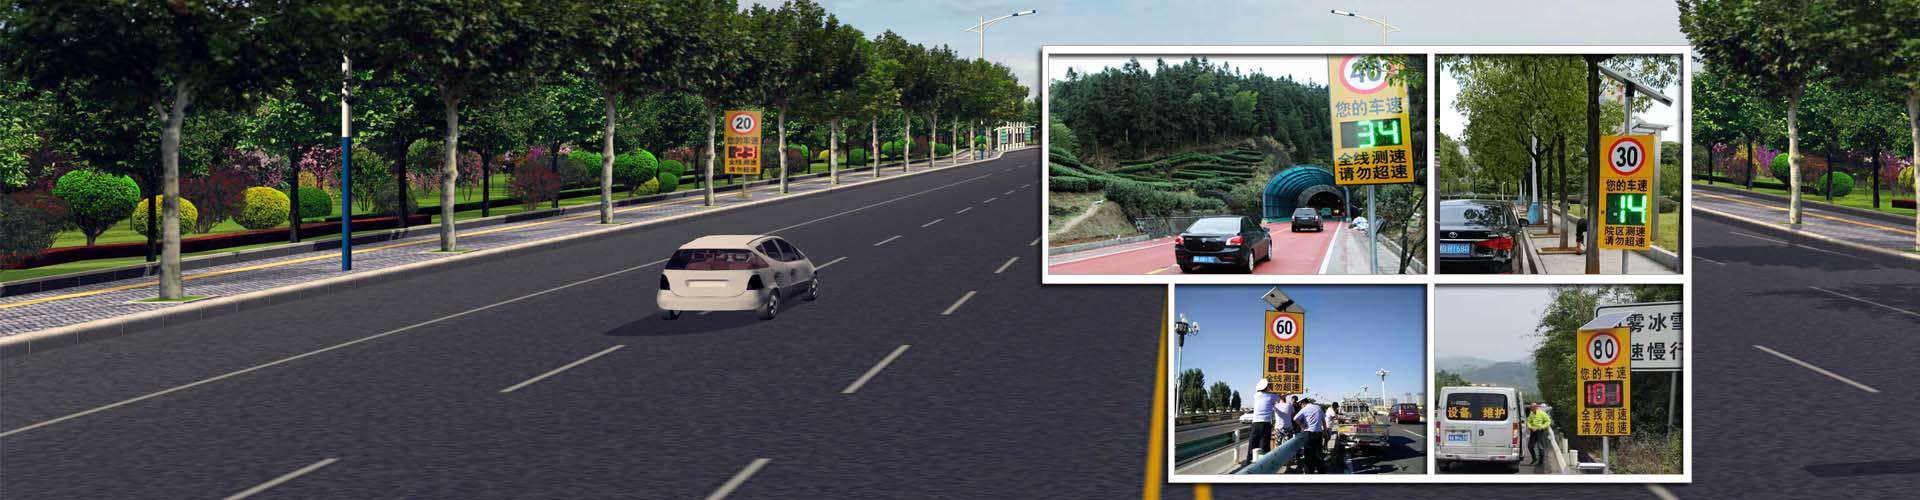 高速公路道路限速安装车速反馈系统案例大展示